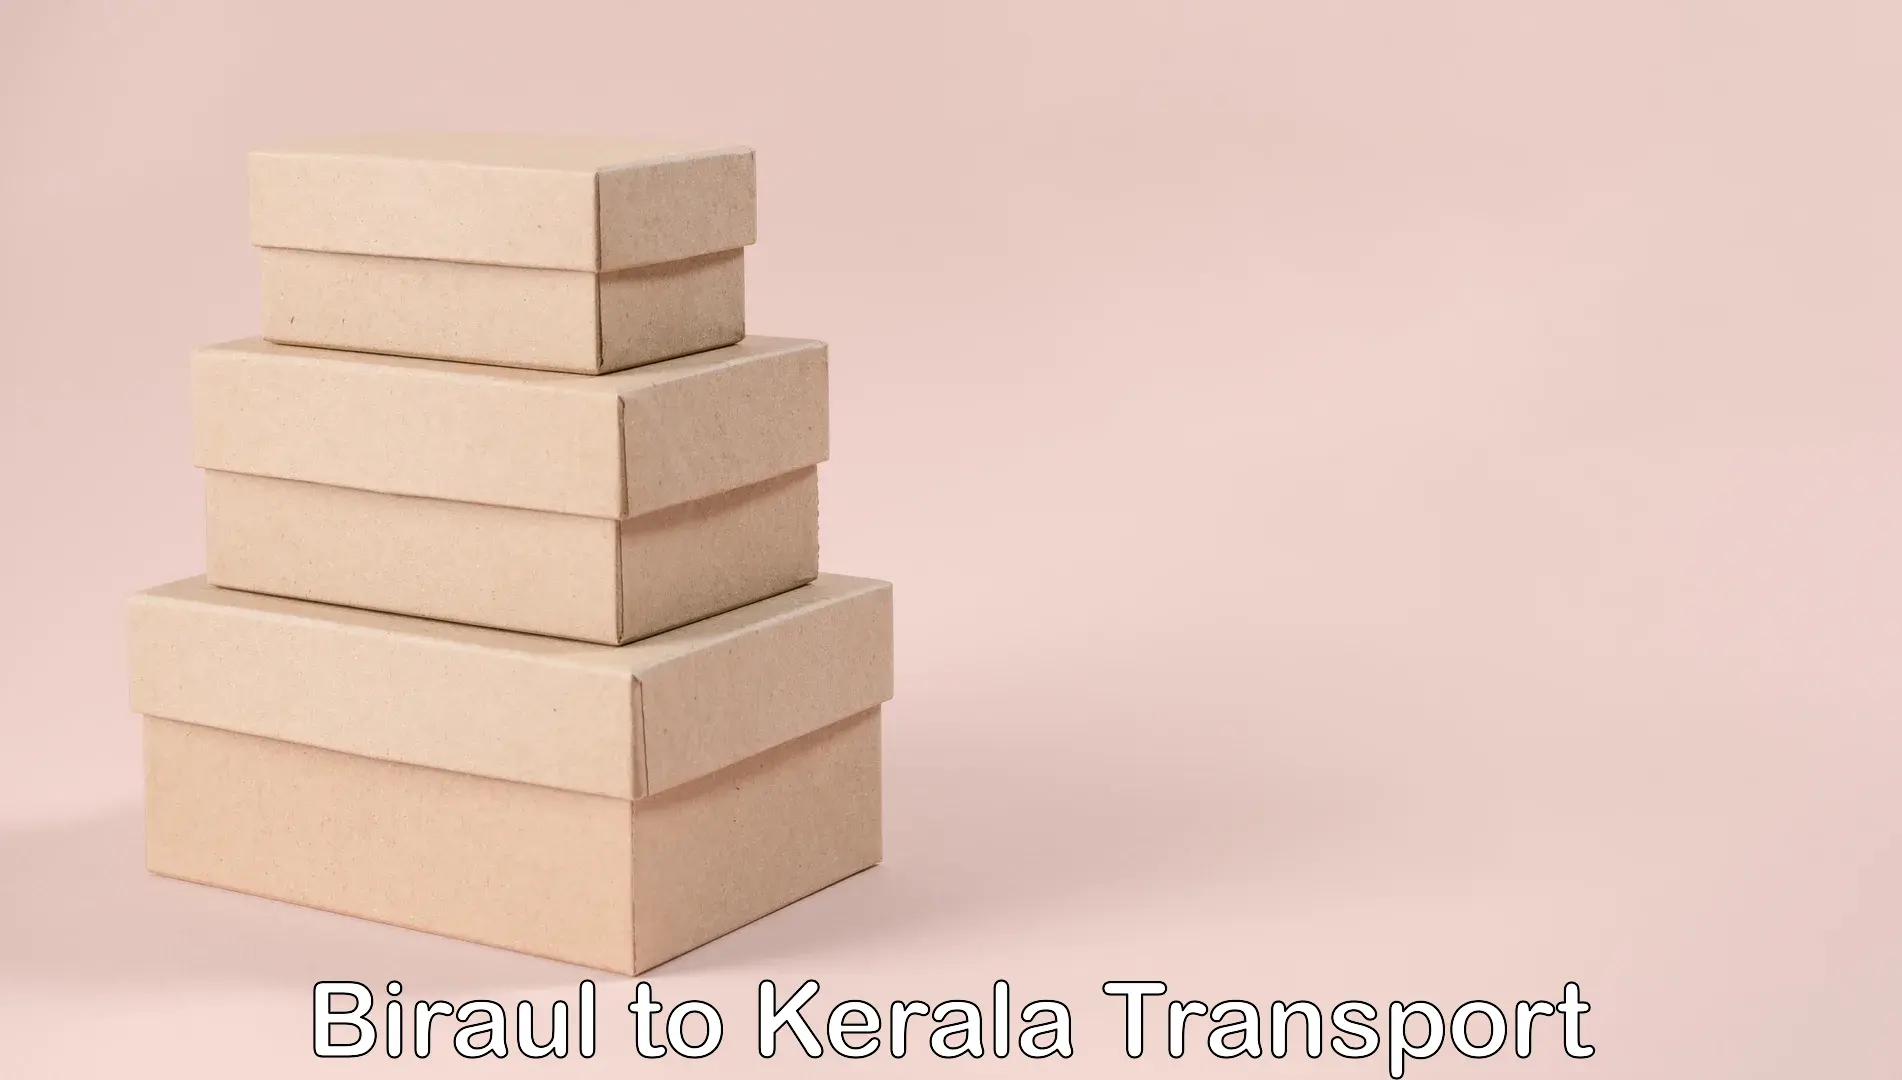 Two wheeler parcel service Biraul to Kerala